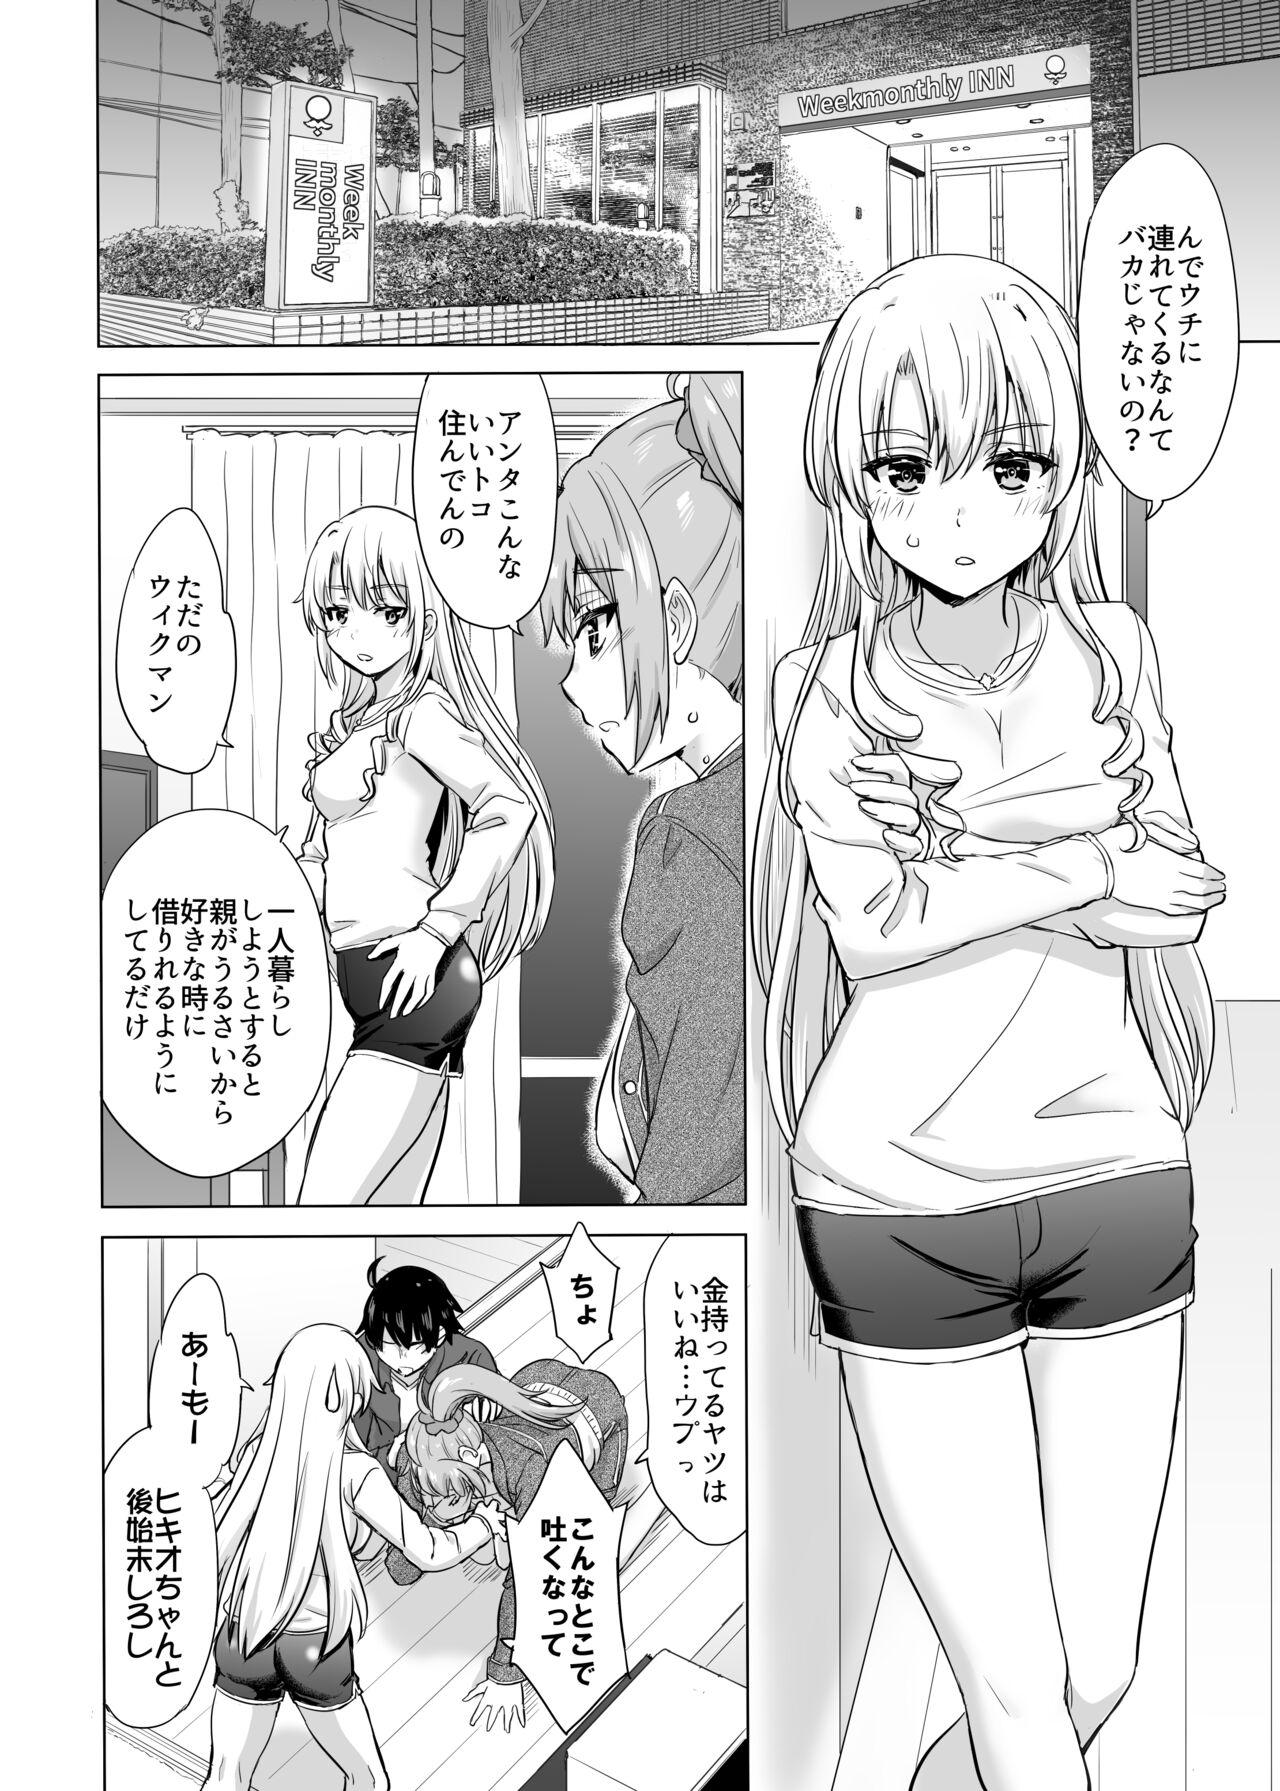 Office Sex Ashi-san Saki Saki Manga - Yahari ore no seishun love come wa machigatteiru Gay Public - Page 2